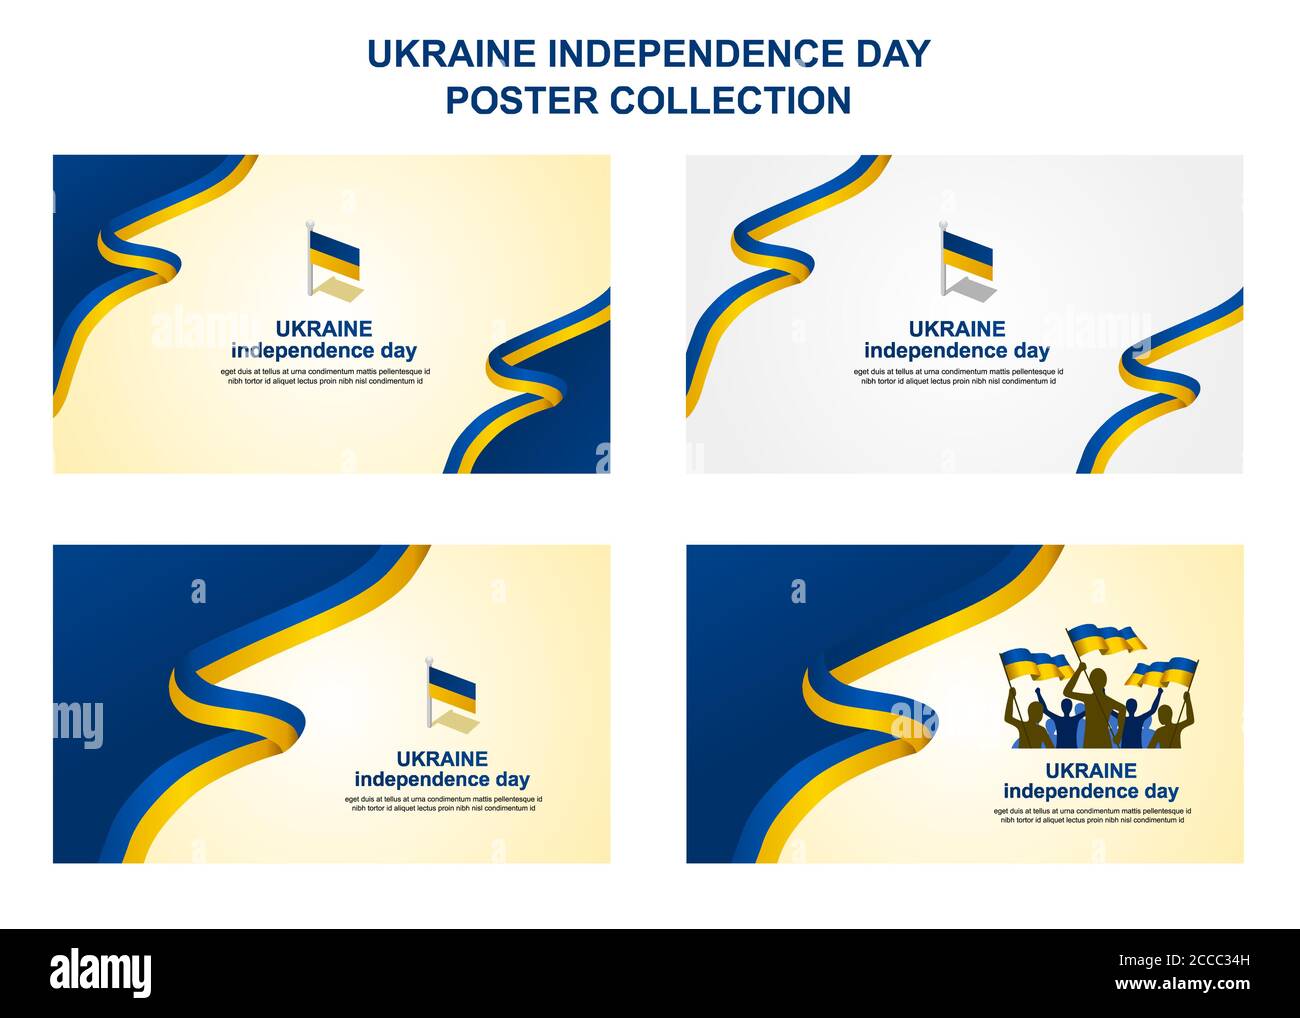 ukraine Unabhängigkeitstag Postersammlung, um den wichtigen Tag der Ukraine am 24. August zu begrüßen, zusätzliche Größe umfassen Schicht für Schicht, relevant für große p Stock Vektor